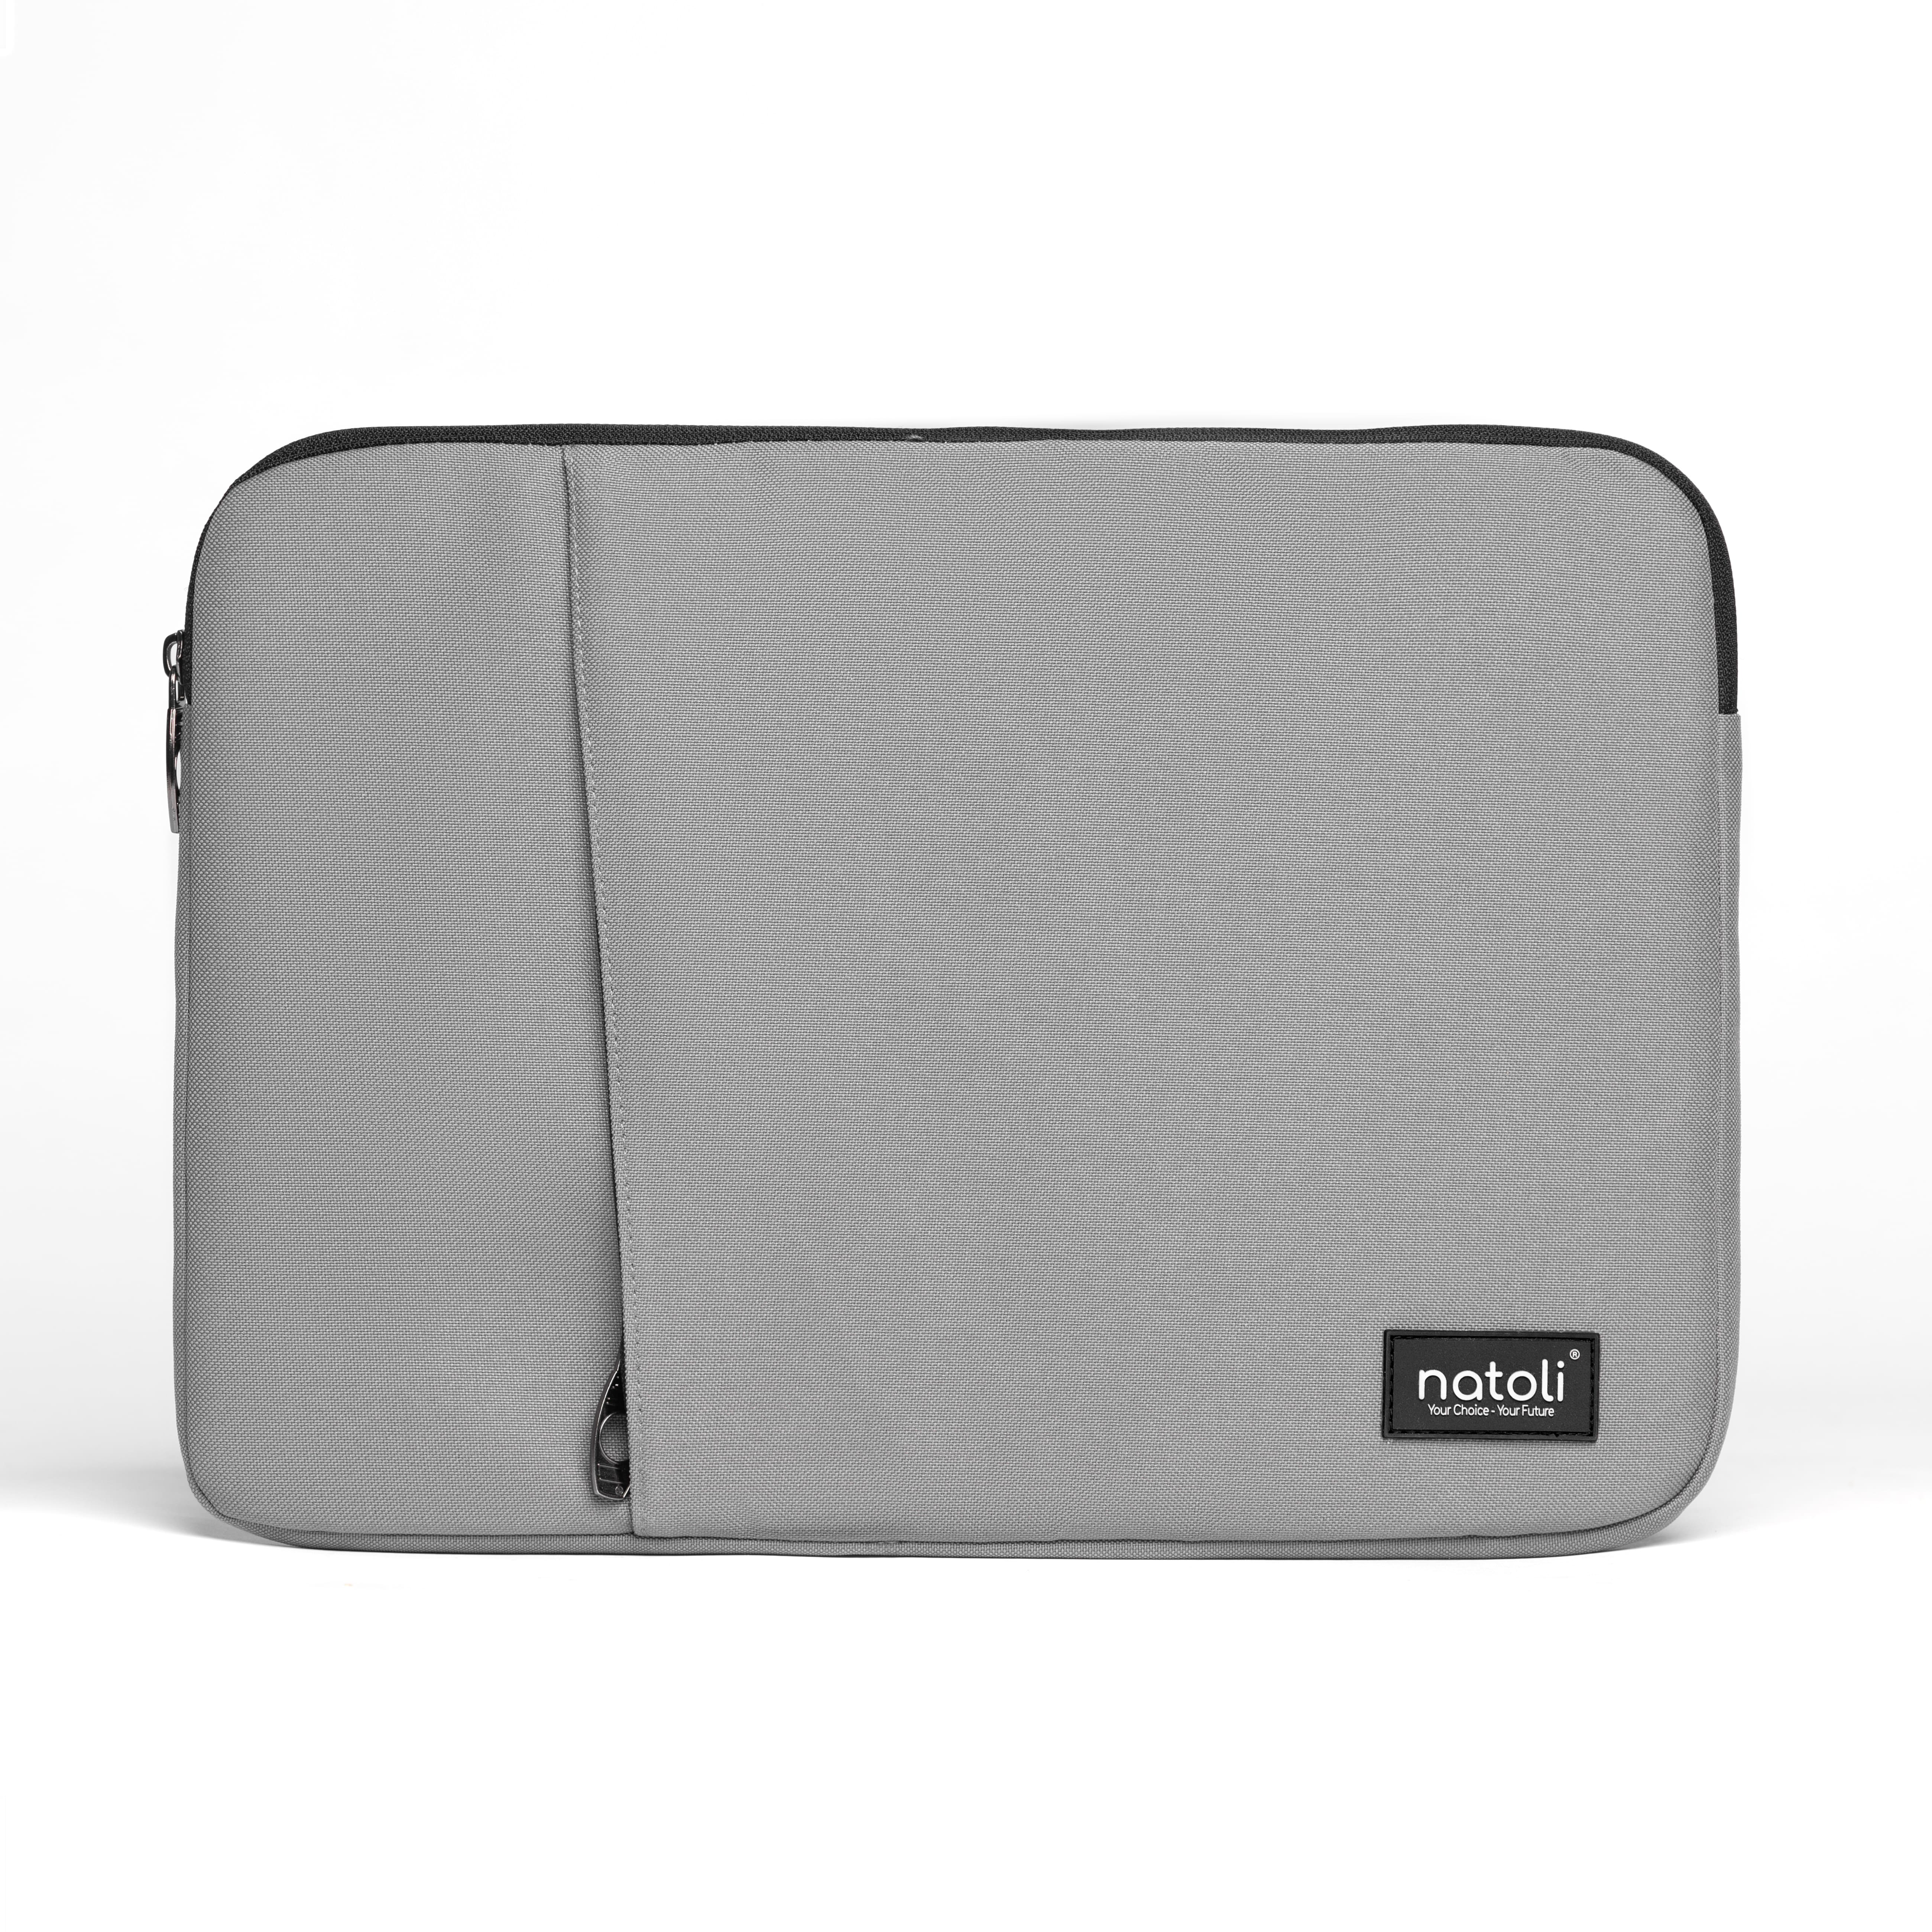 Hình ảnh Túi đựng laptop Eager laptop bag T7 chính hãng NATOLI bao laptop chống sốc dày dặn kháng nước